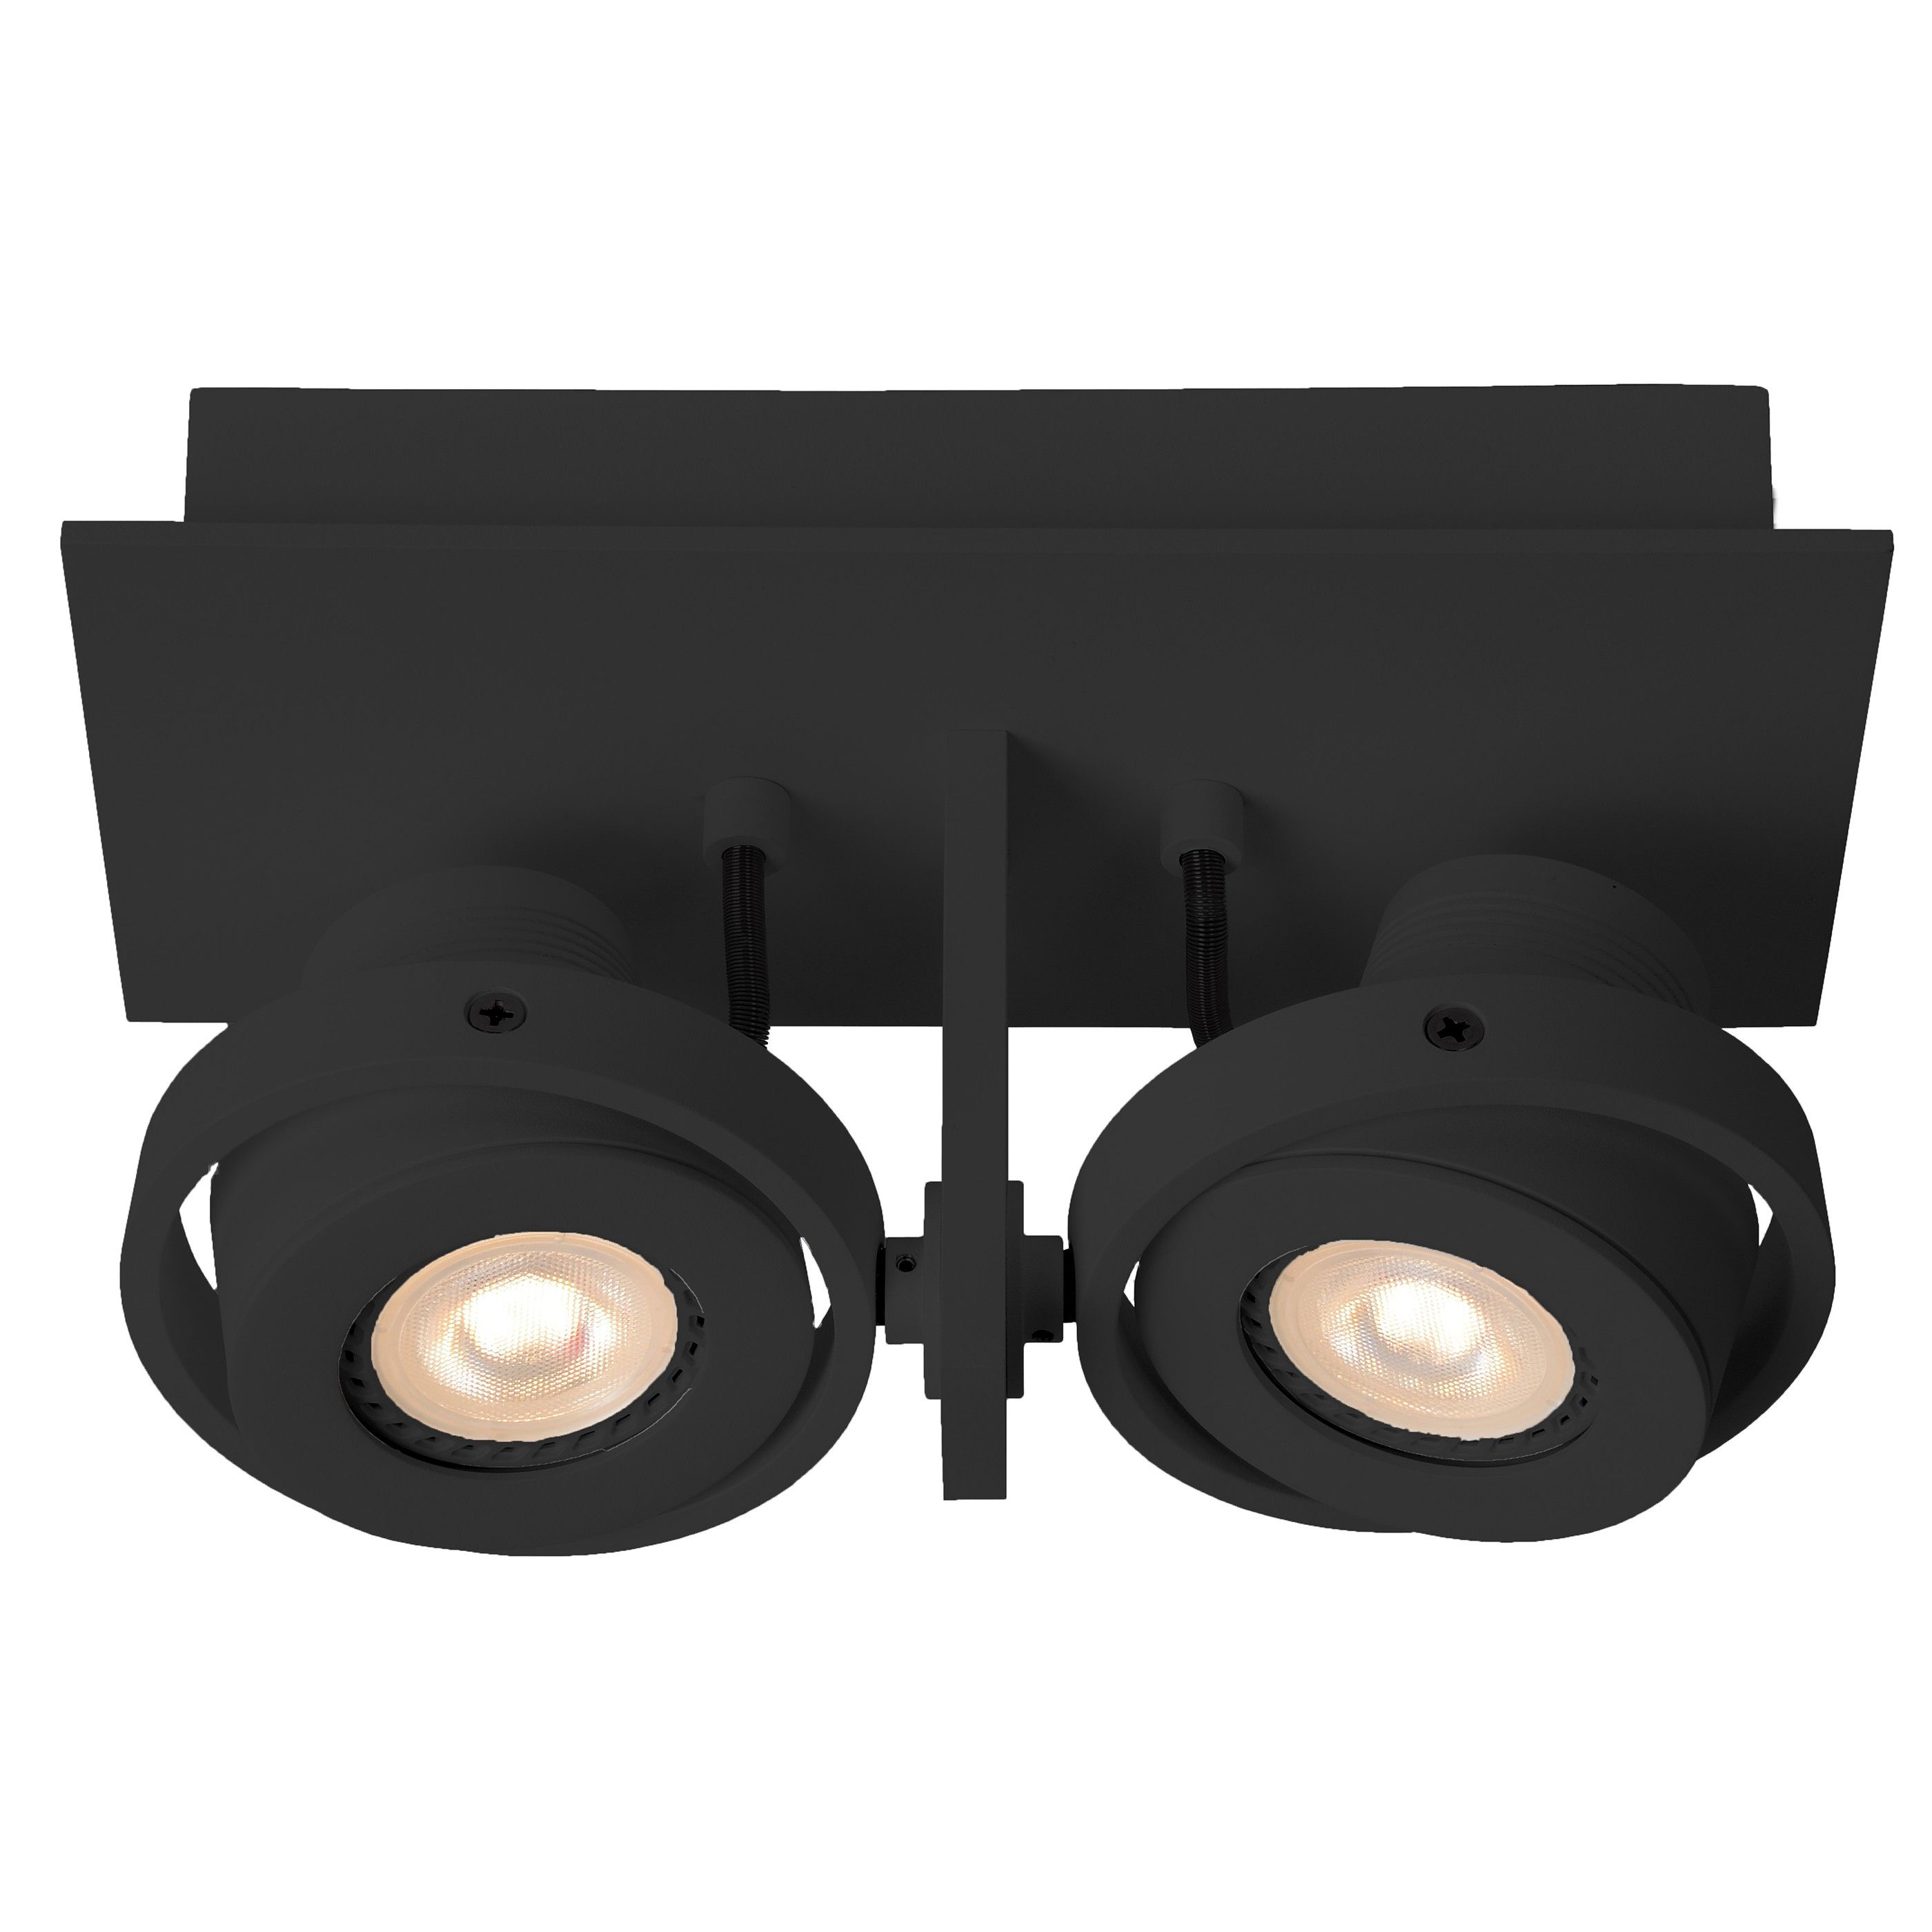 Zuiver Luci-LED spot dubbel zwart dimbaar | Flinders